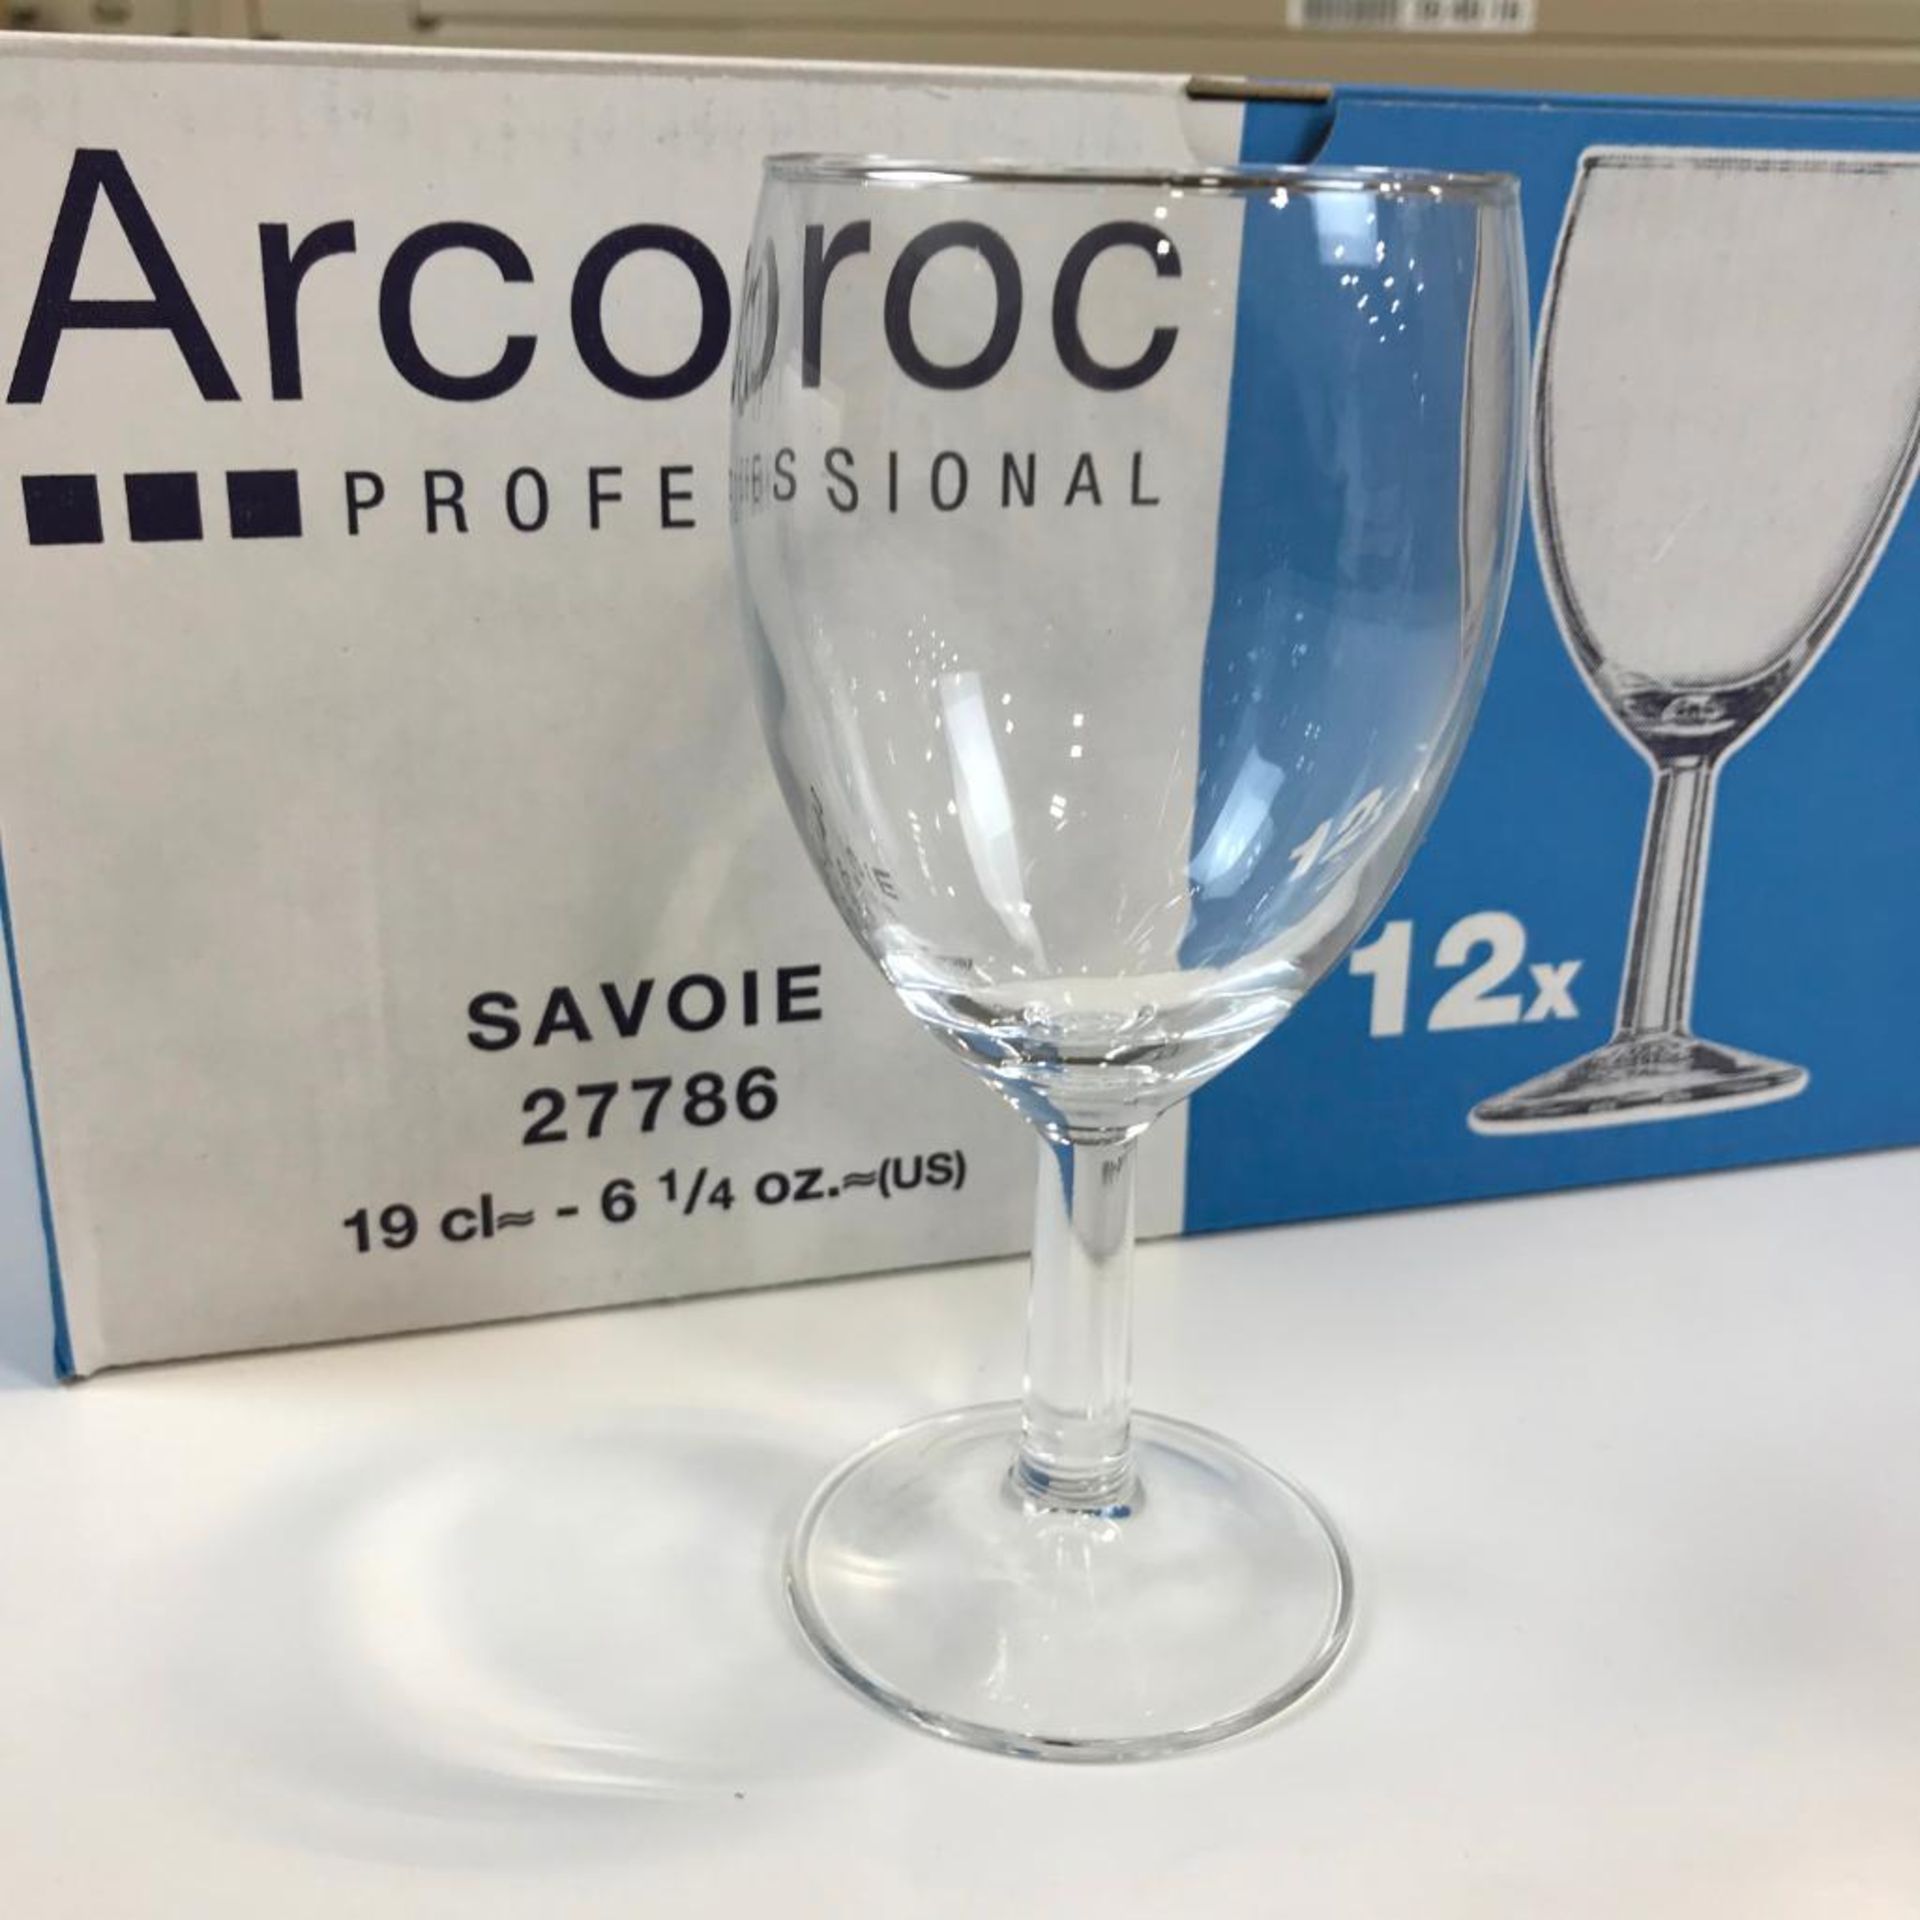 6.7OZ/190ML SAVOIE WINE GLASSES, ARCOROC 27786 - CASE OF 12 - NEW - Image 2 of 4